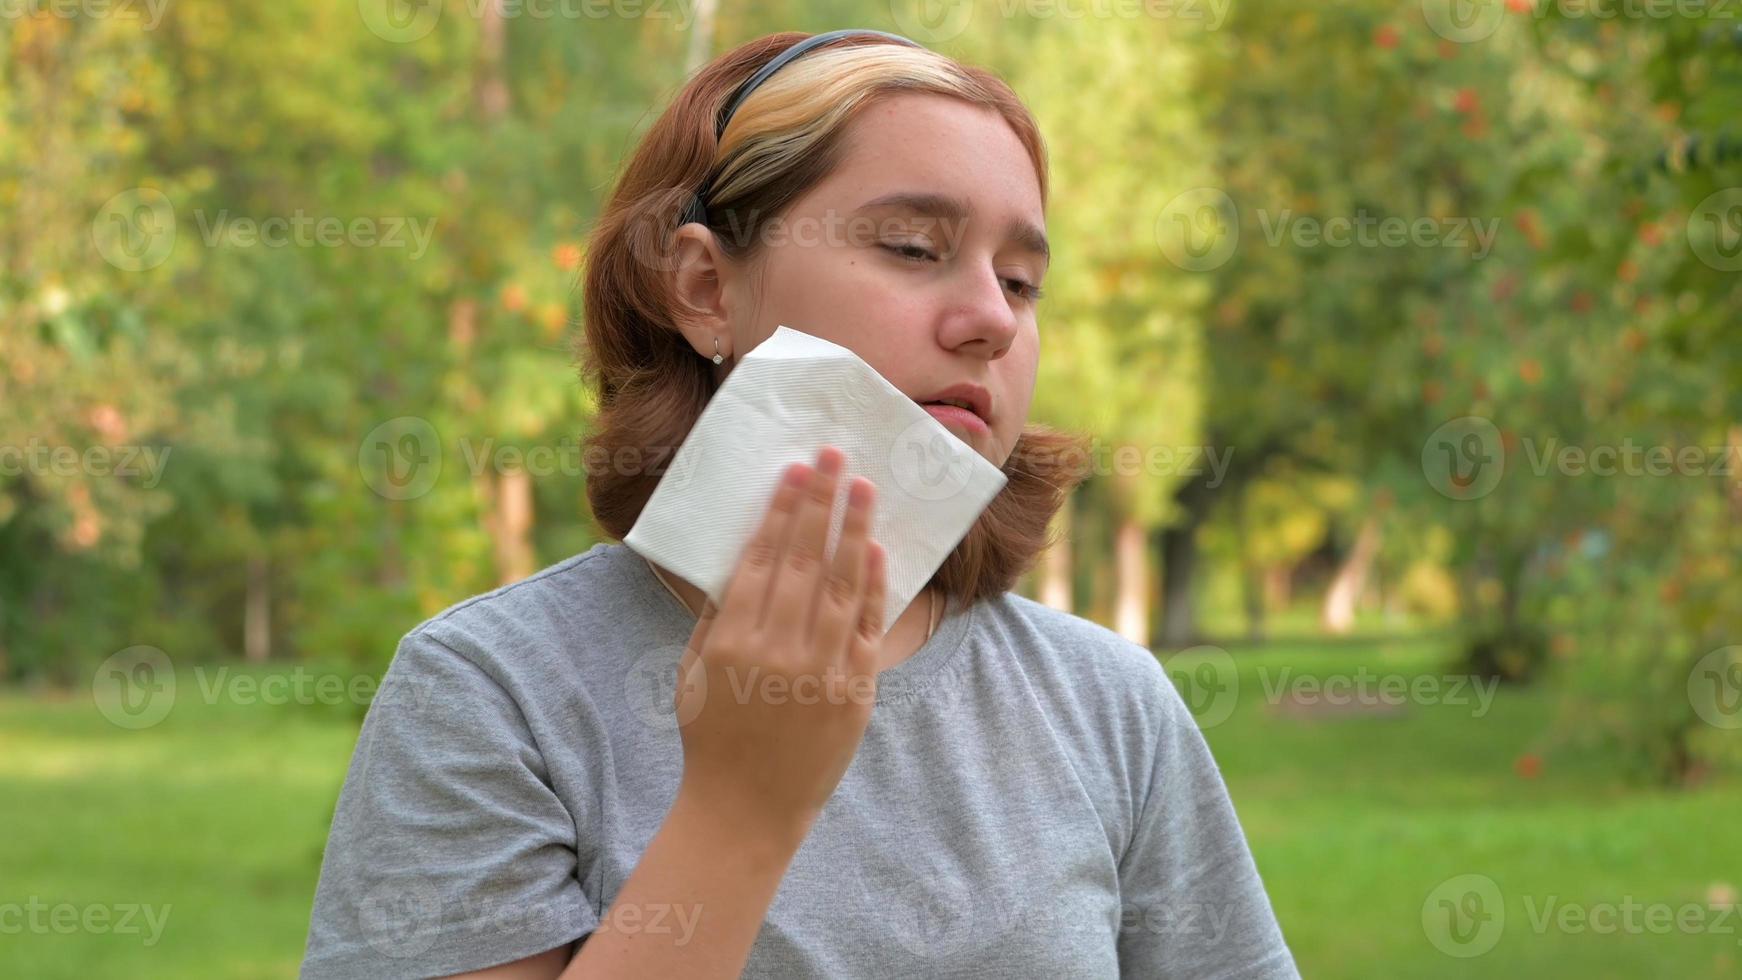 una adolescente con un corte de pelo corto se limpia la cara con una servilleta del sudor en el calor después de comer se limpia los labios foto